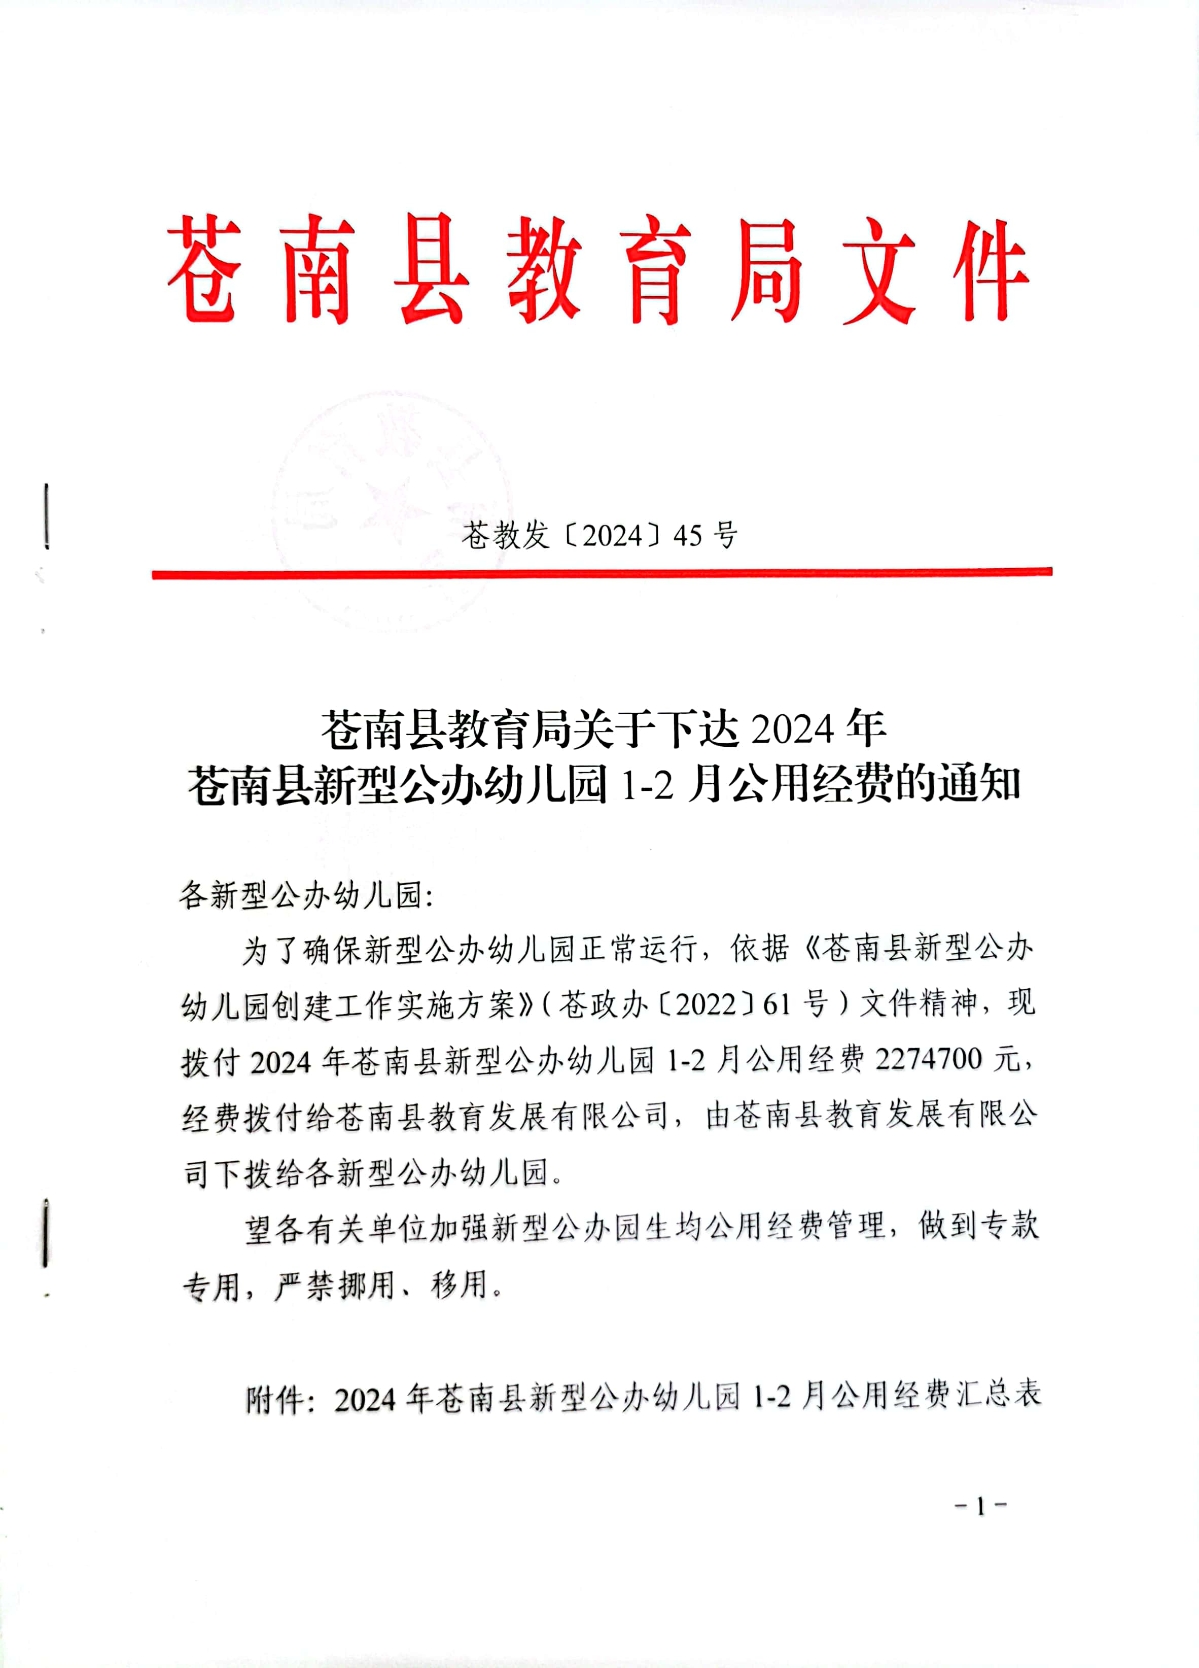 苍教发〔2024〕45号关于下达2024年苍南县新型公办幼儿园1-2月公用经费的通知.jpg